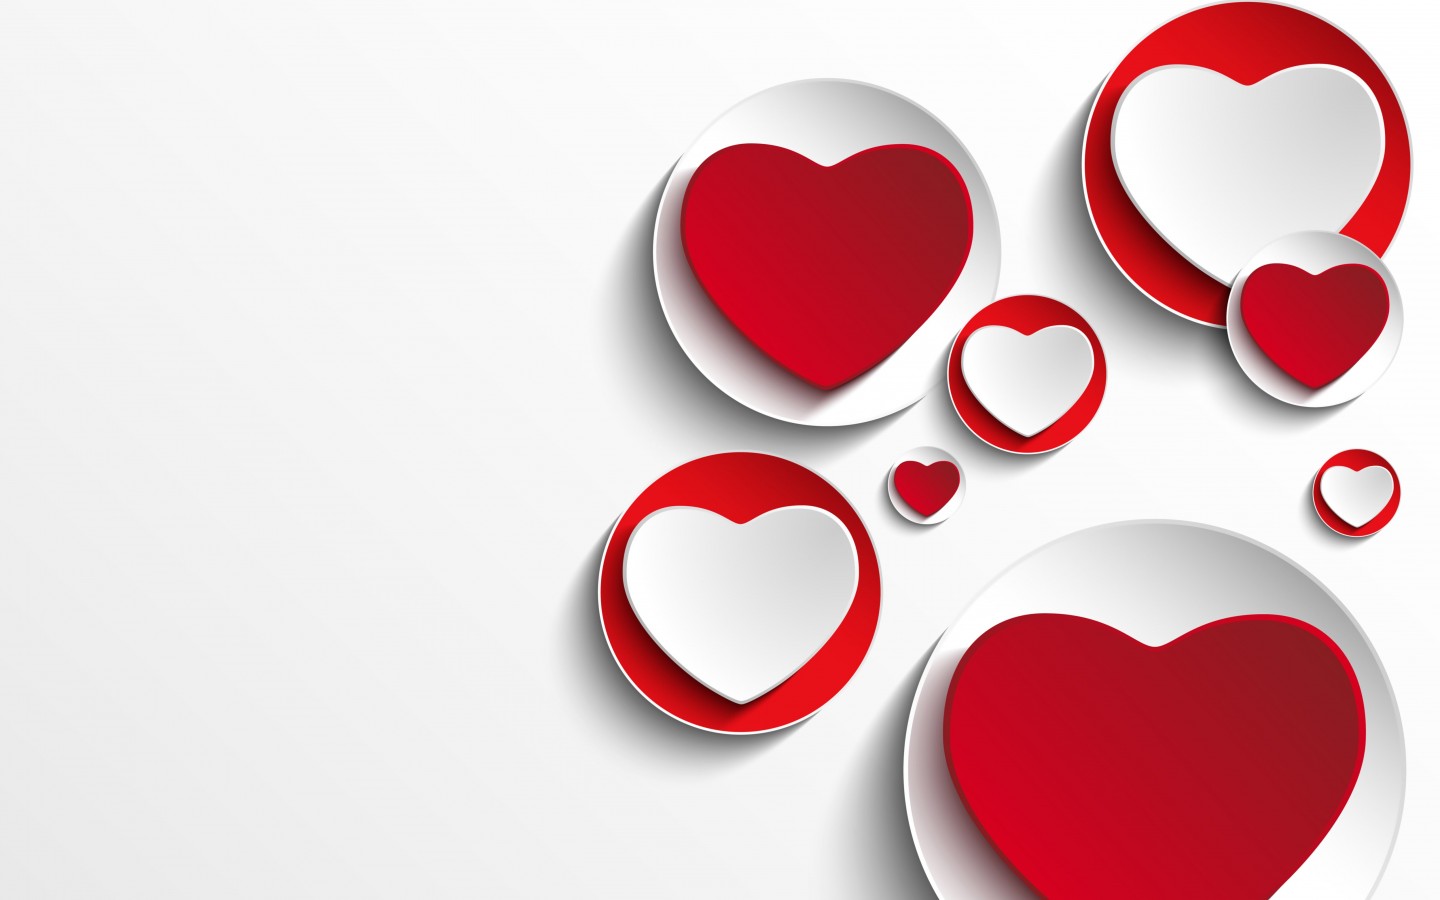 Minimalistic Hearts Shapes Wallpaper for Desktop 1440x900